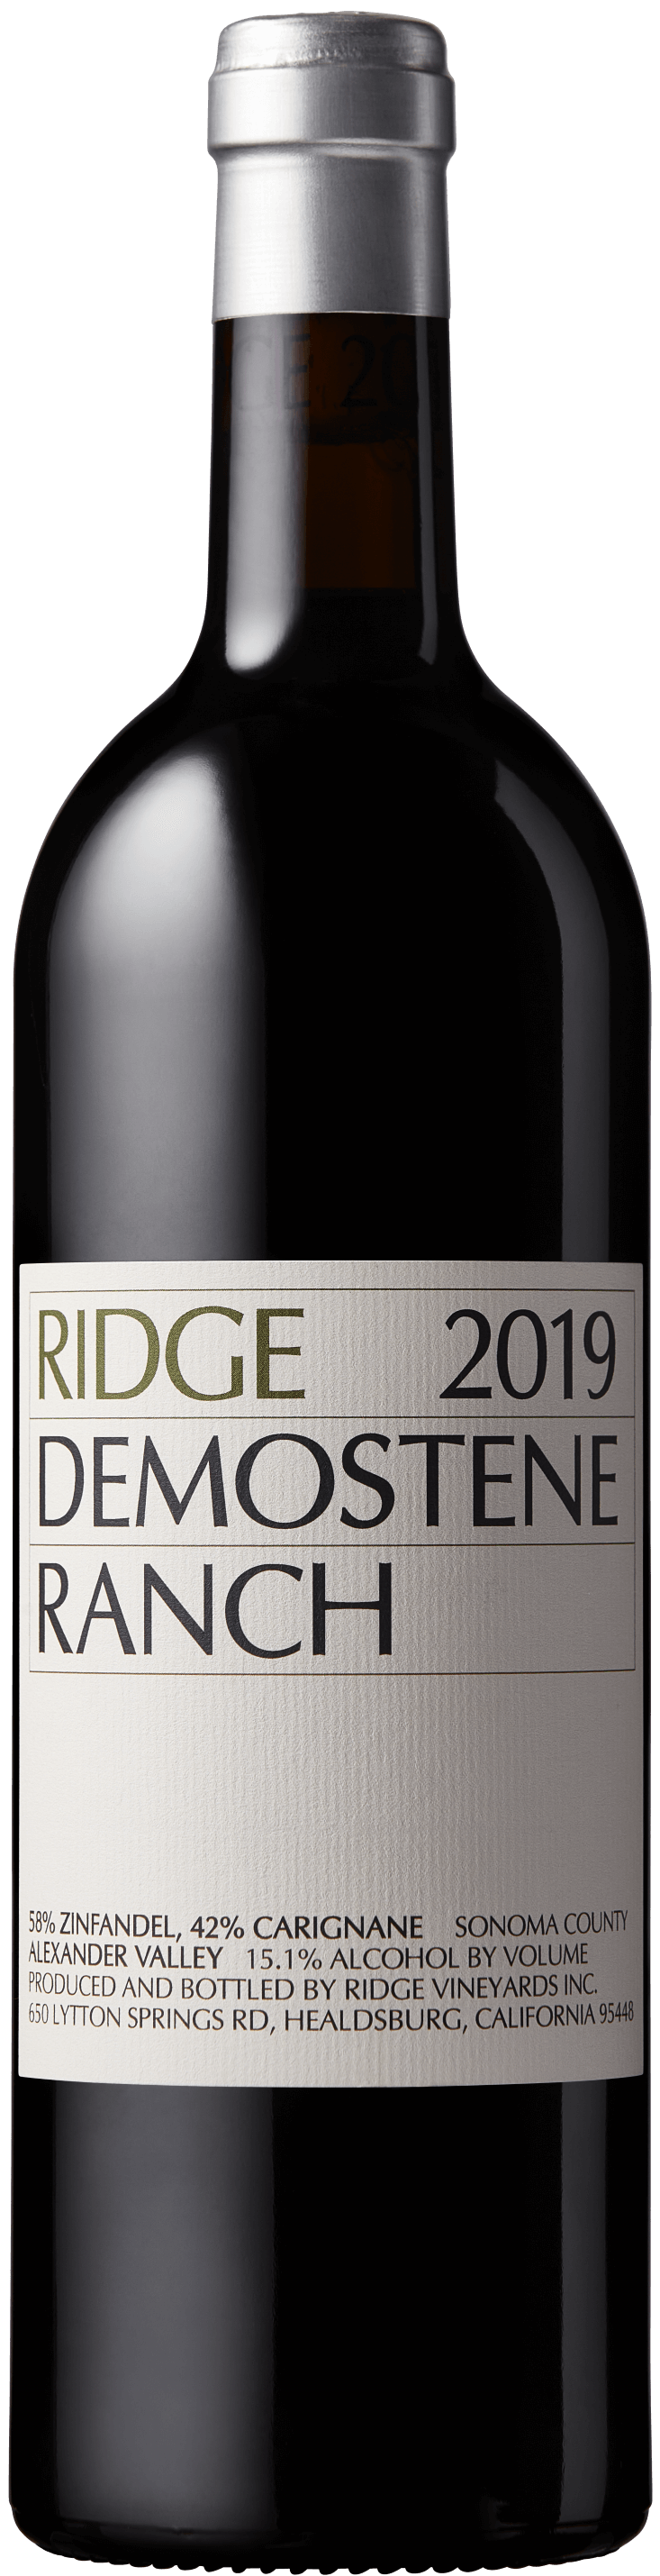 2019 Demostene Ranch